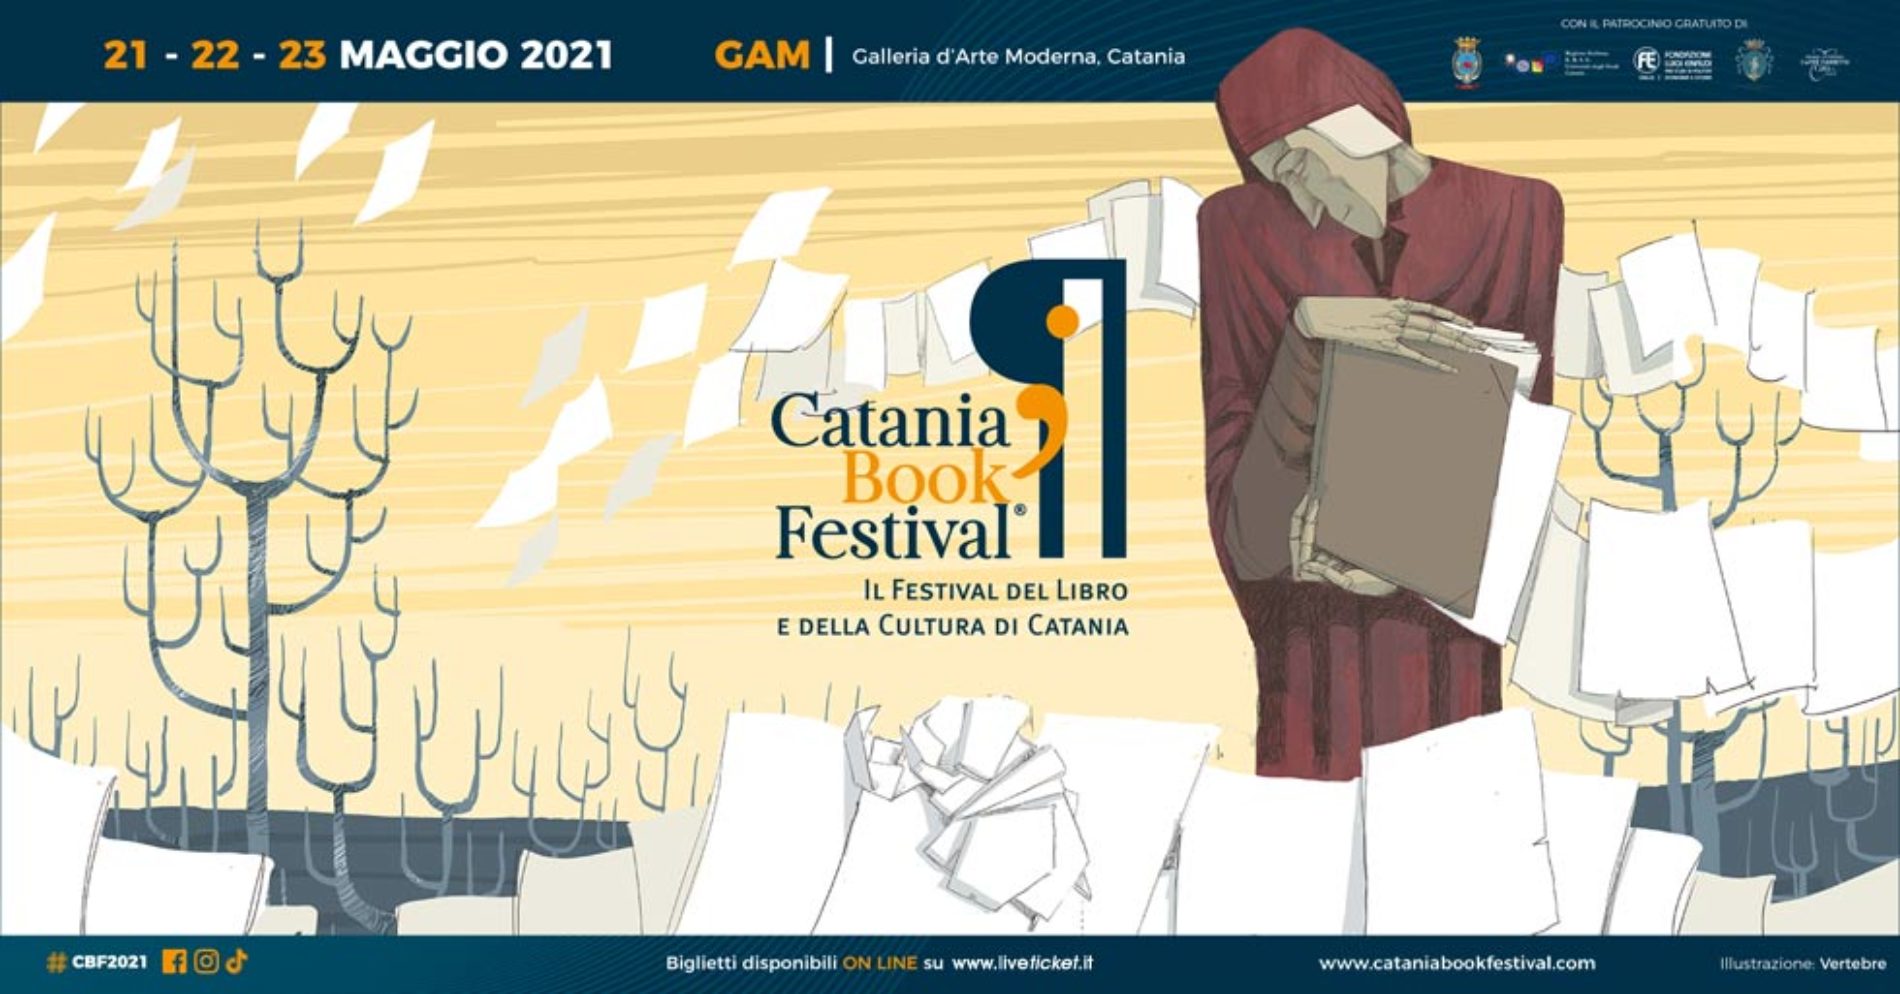 Catania Book Festival, il Festival del Libro e della Cultura di Catania 2021